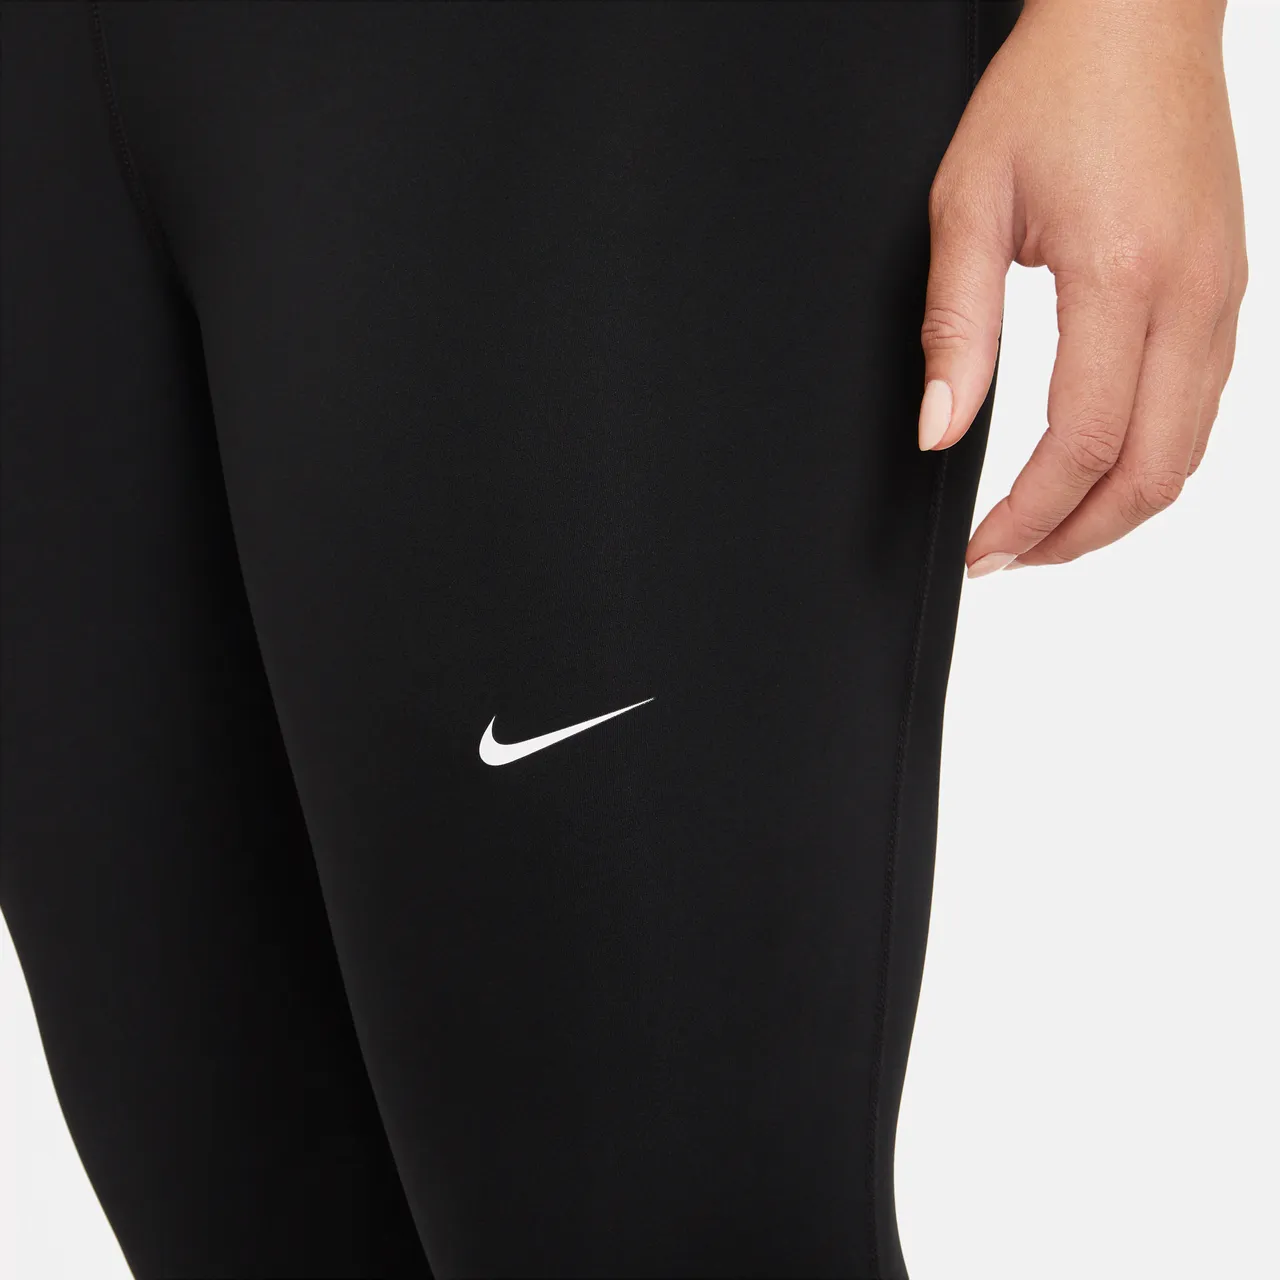 Nike Pro 365 Women's Leggings - Black - Polyester